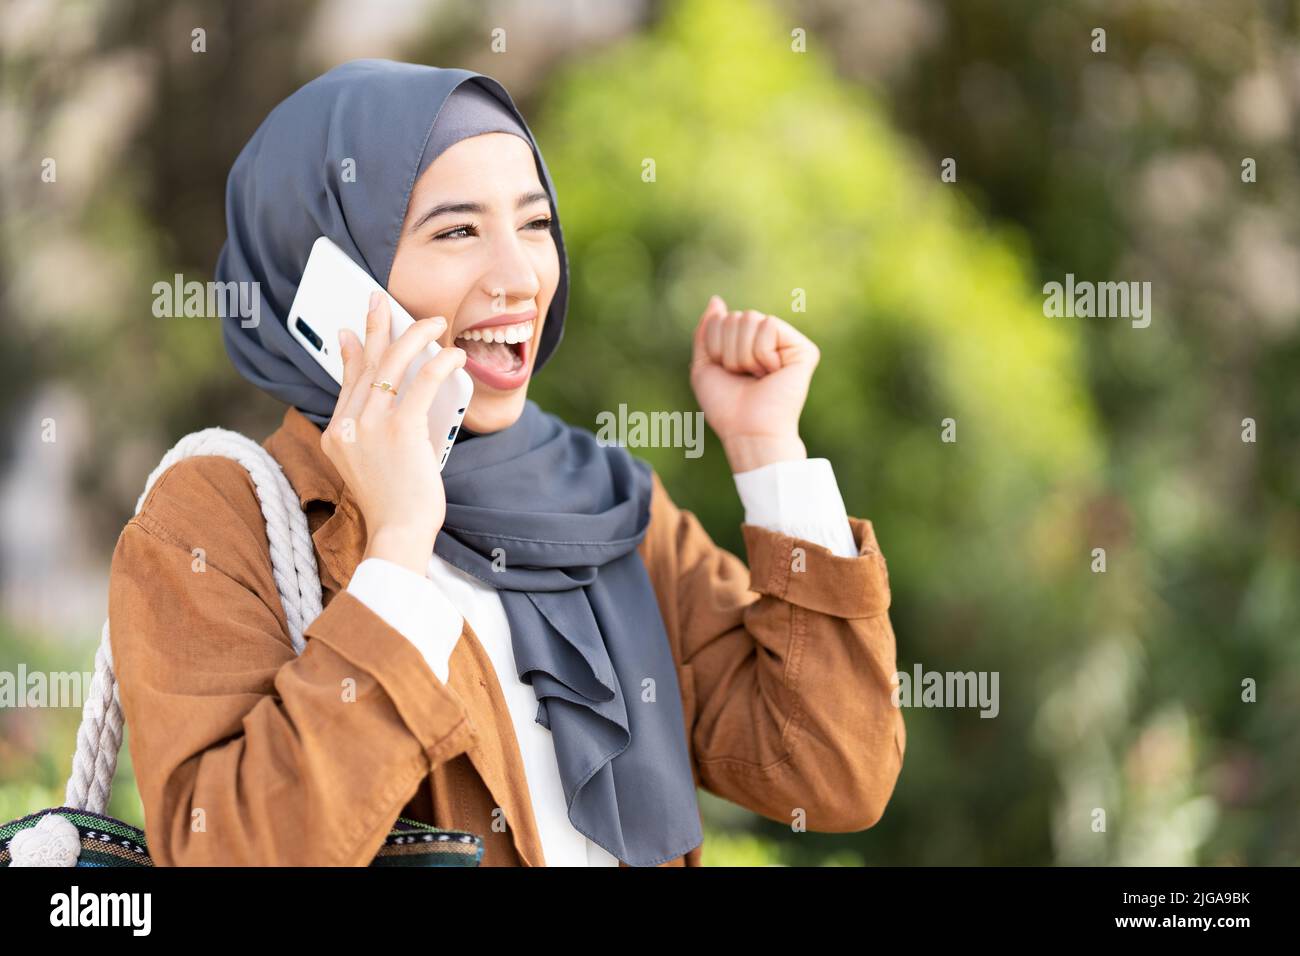 La donna musulmana alza il pugno per festeggiare con la mobilità Foto Stock